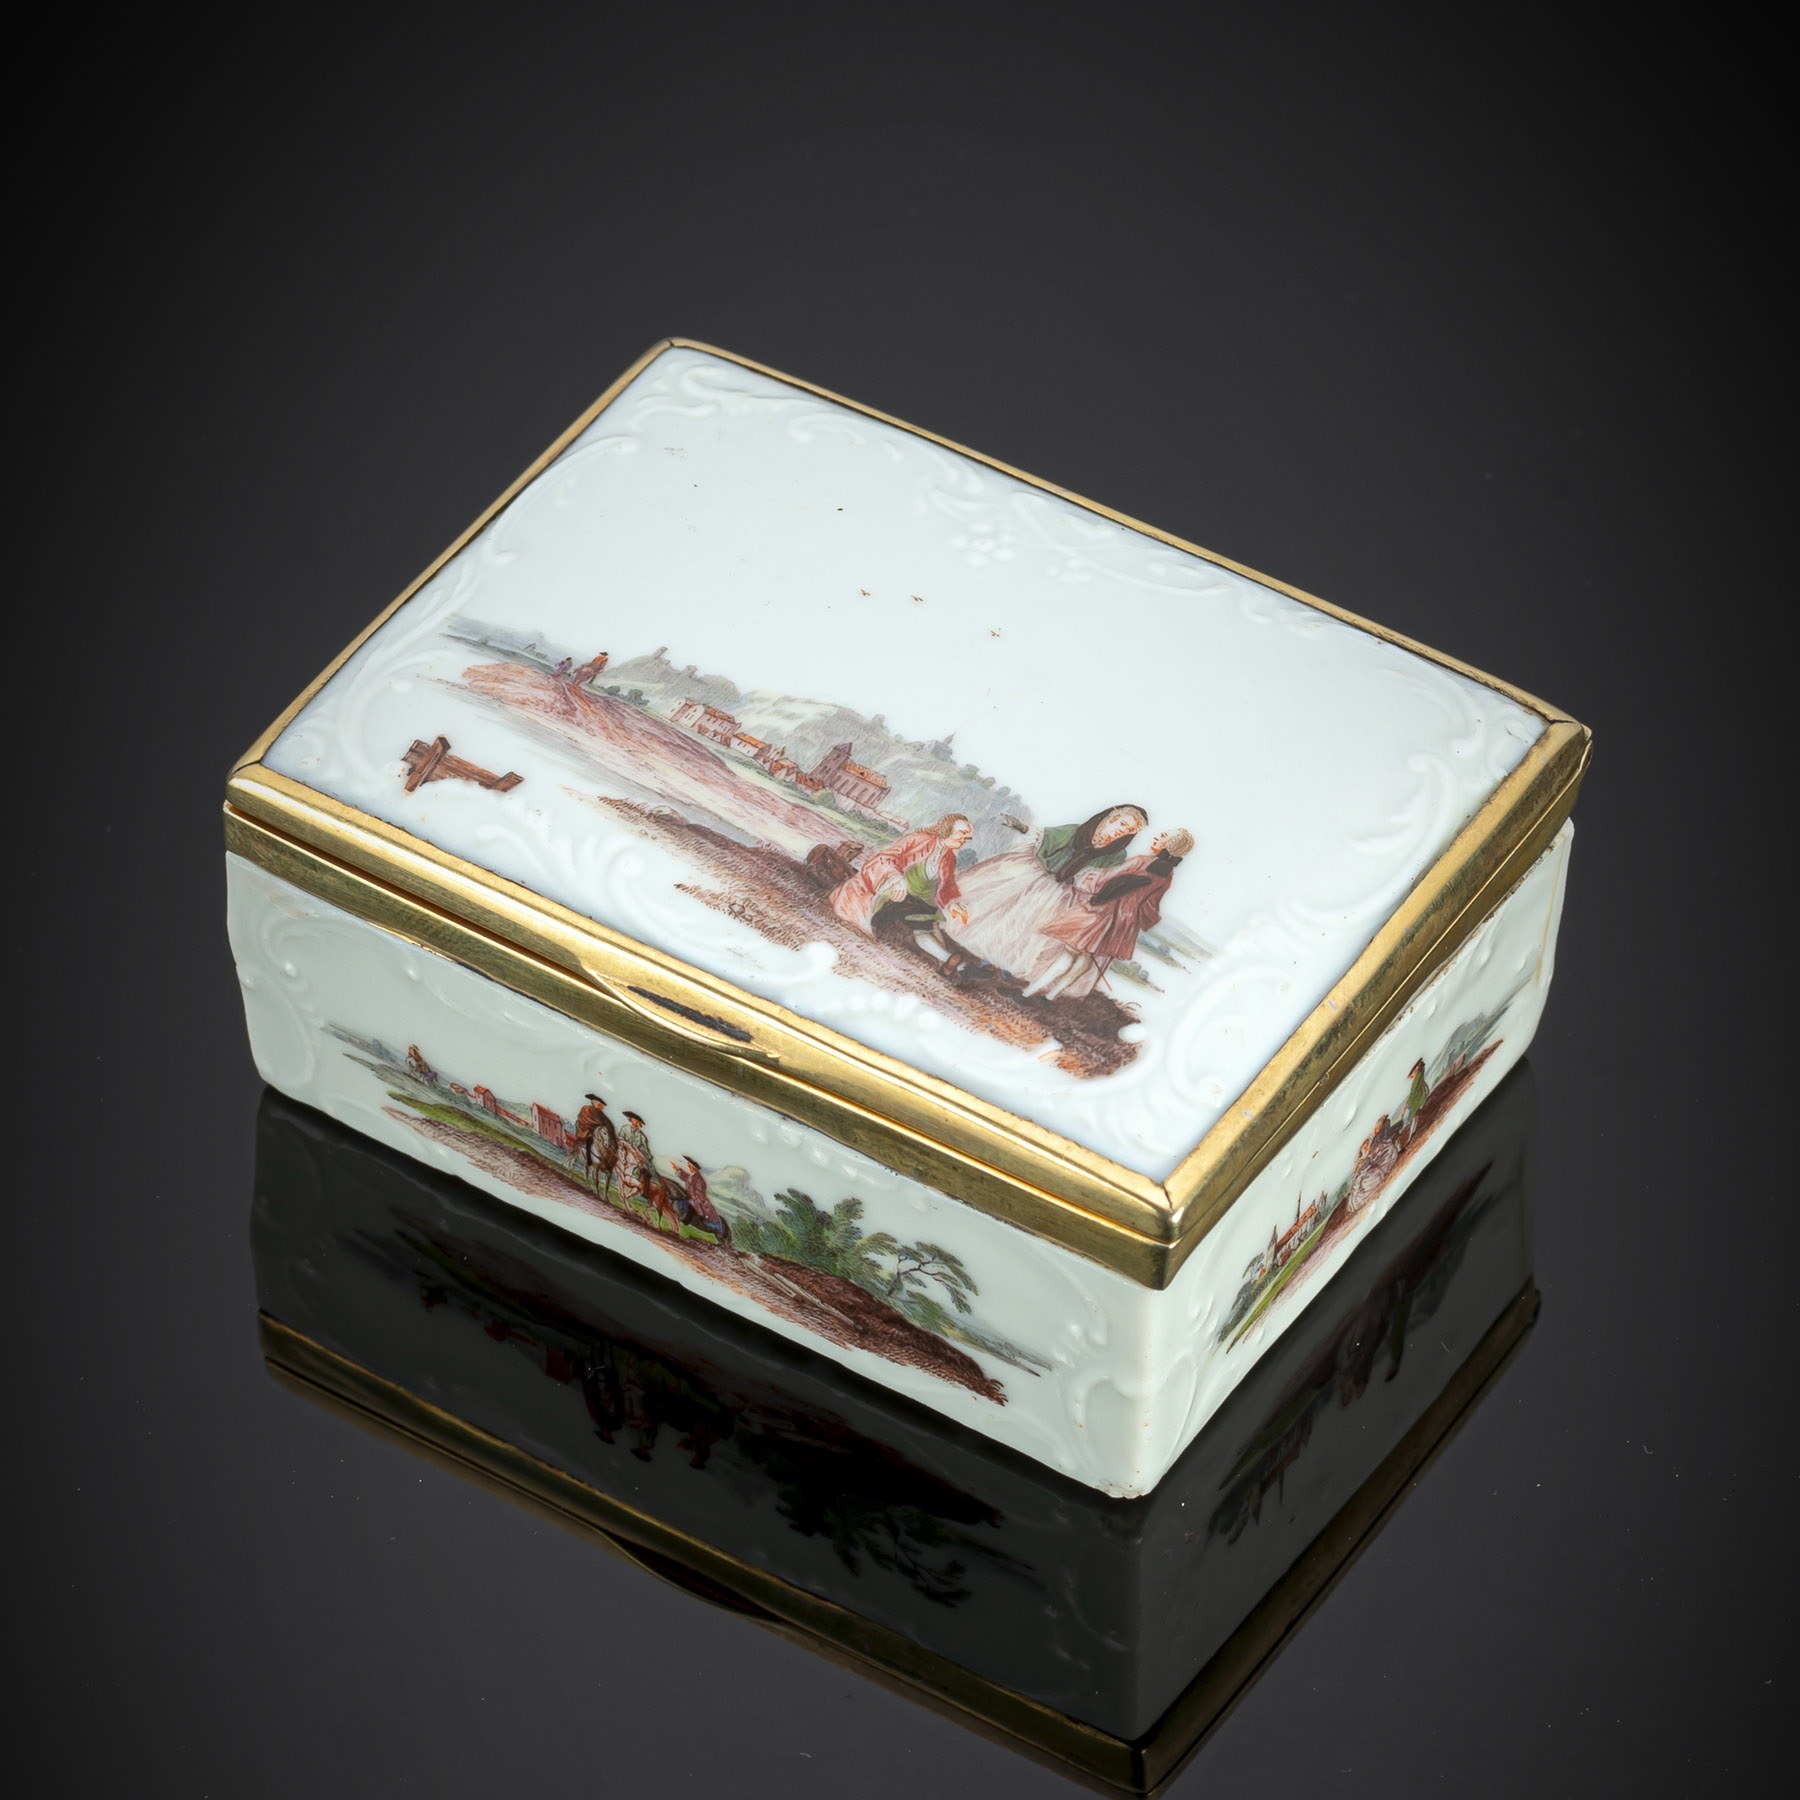 A FINE MEISSEN PORCELAIN SNUFF BOX WITH WATTEAU SCENES